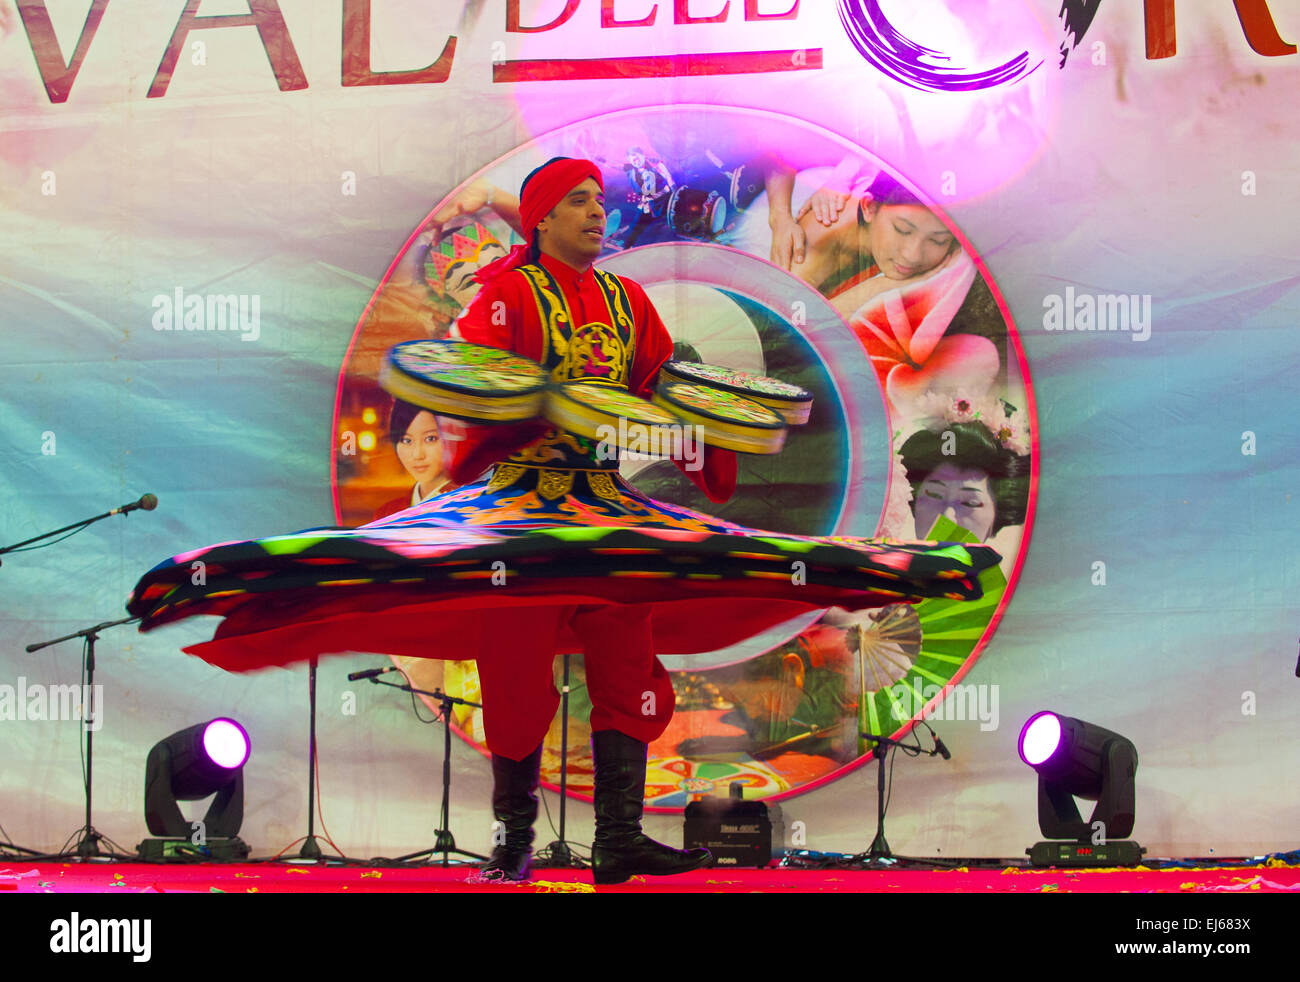 Turin, Italie. 22 mars, 2015. Le Lingotto fair 'Festival dell'Oriente' du 20 au 22 mars 2015 et du 27 au 30 mars 2015 - 20 mars 2015 Emad Selim Tammura Dervishi Dance Crédit : Realy Easy Star/Alamy Live News Banque D'Images